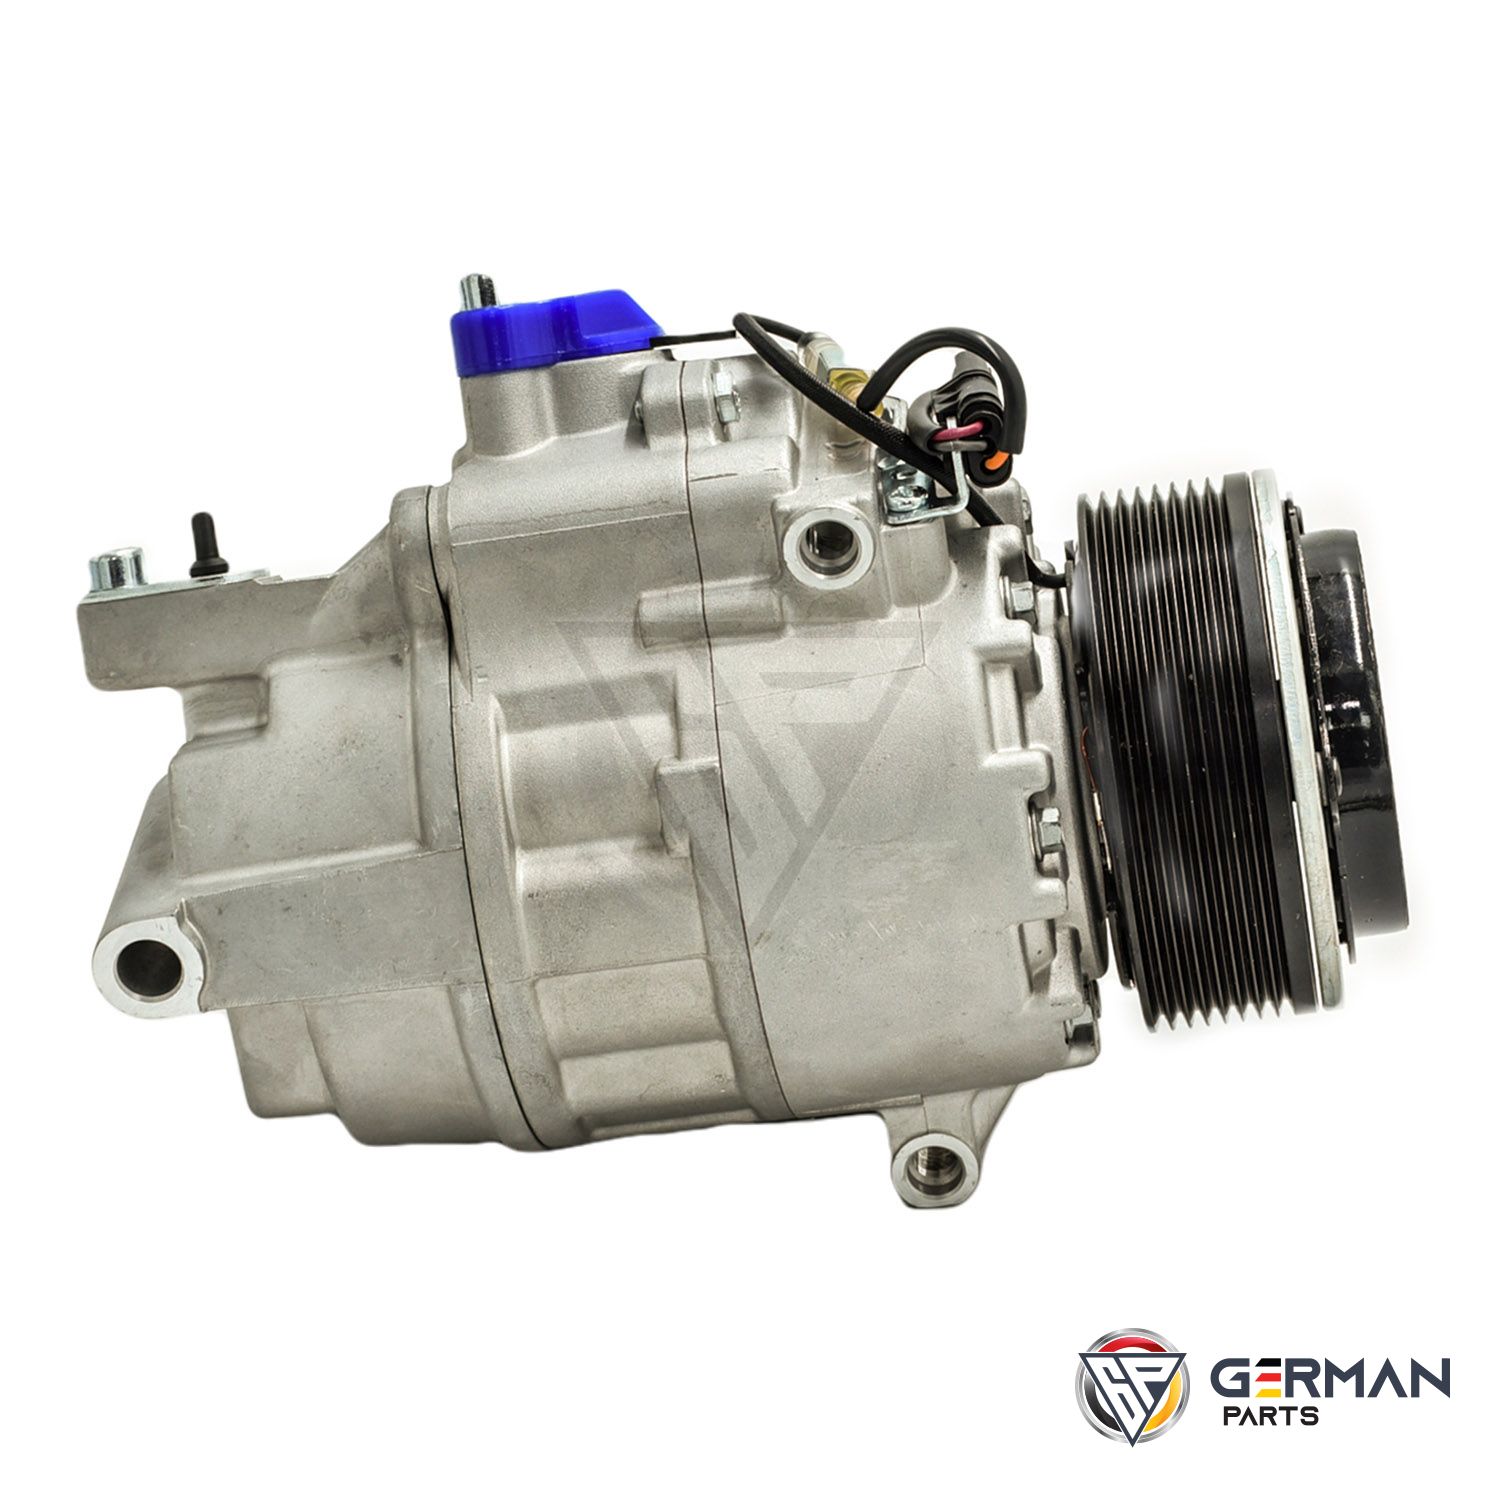 Buy Sanden Ac Compressor 64529205096 - German Parts